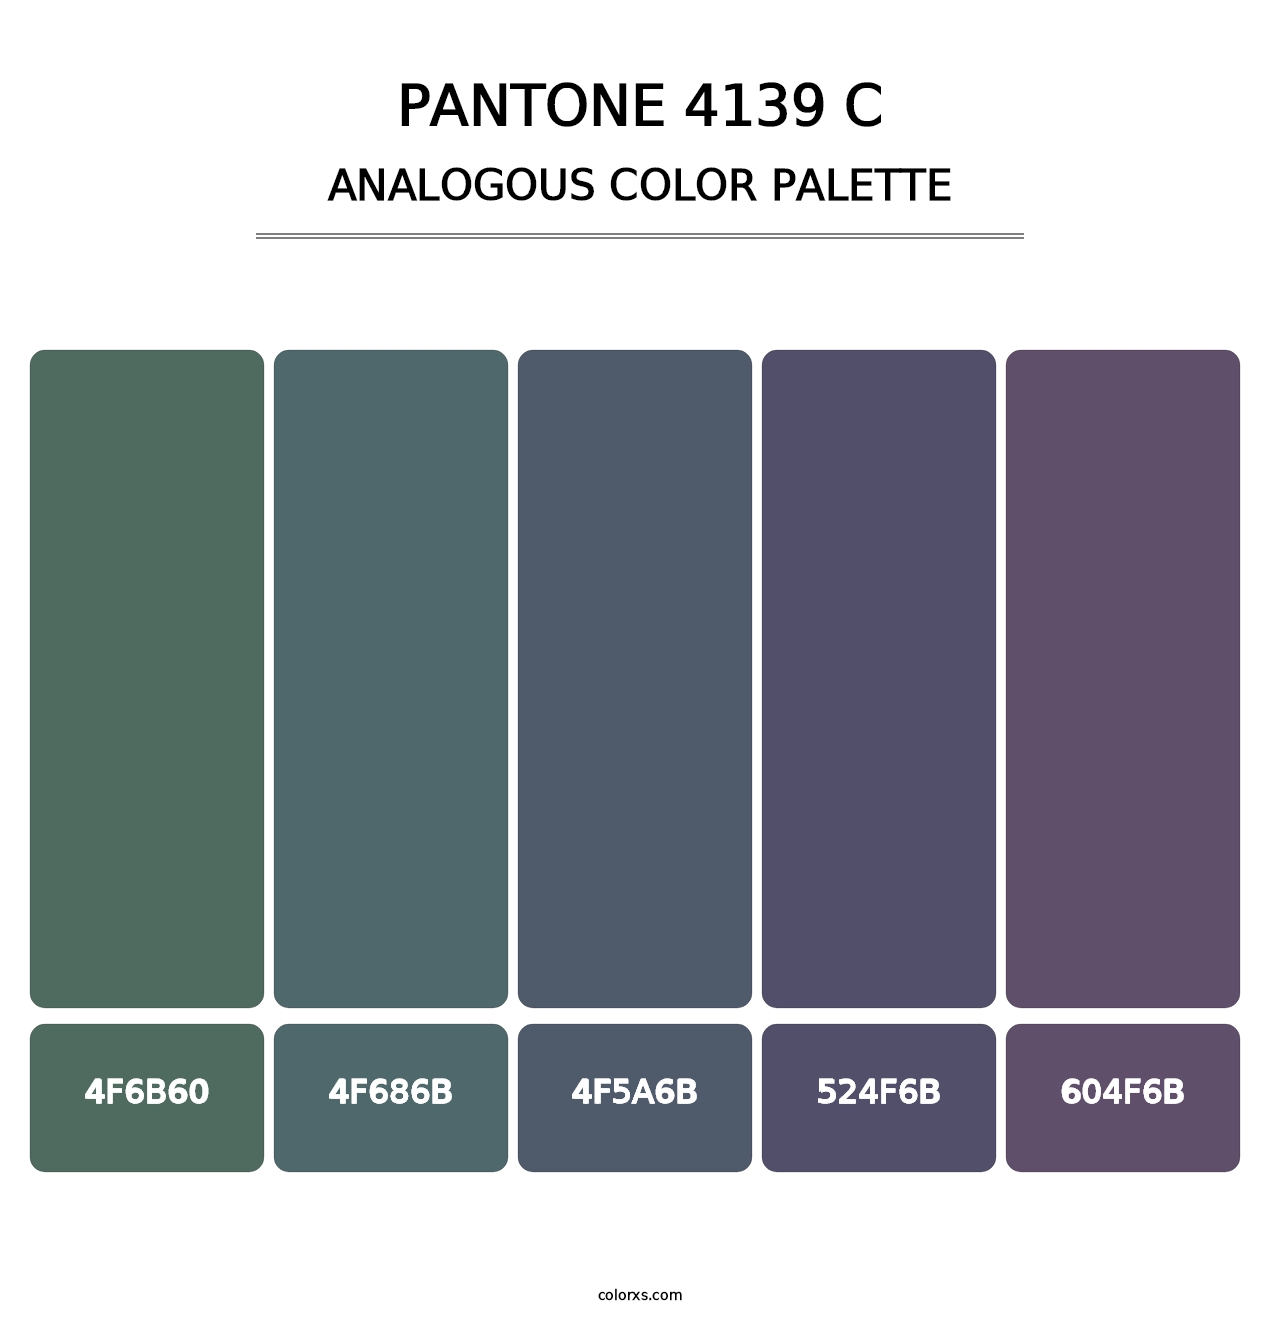 PANTONE 4139 C - Analogous Color Palette